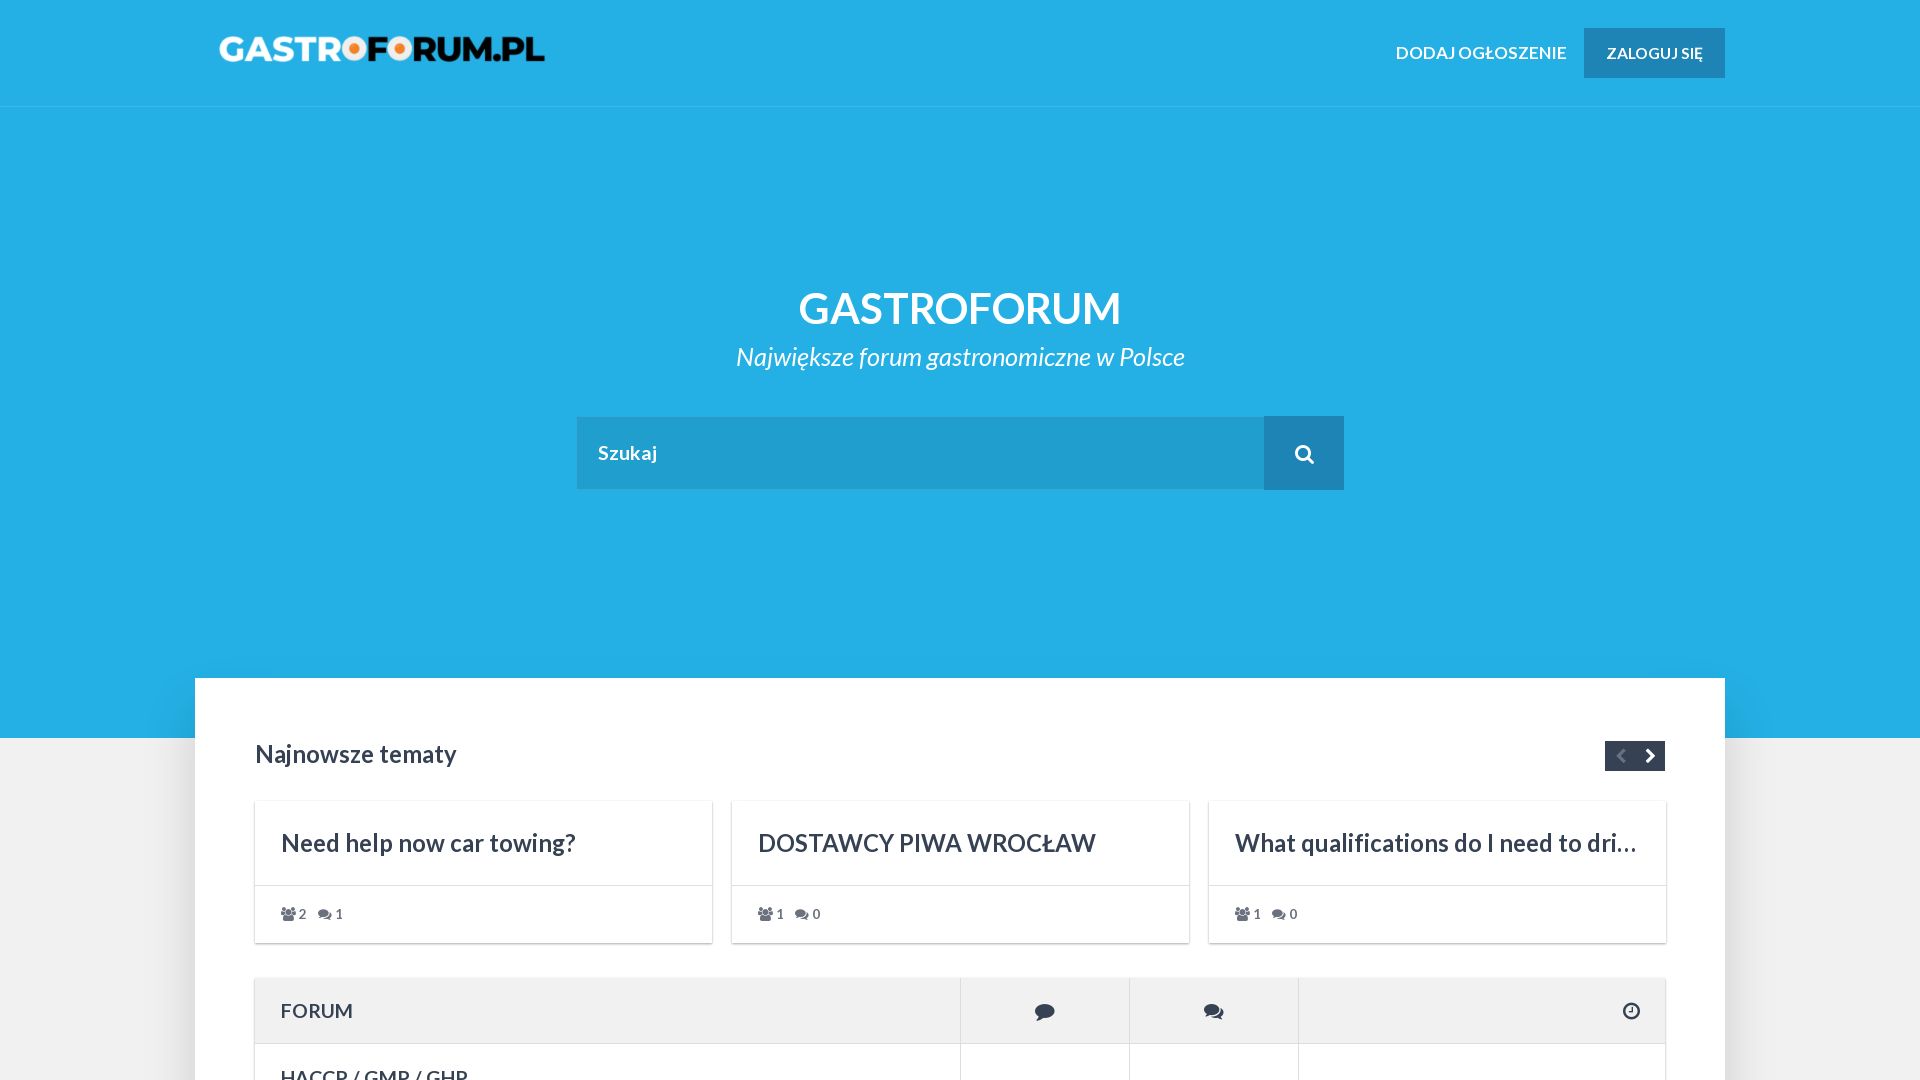 Website status gastroforum.pl is   ONLINE